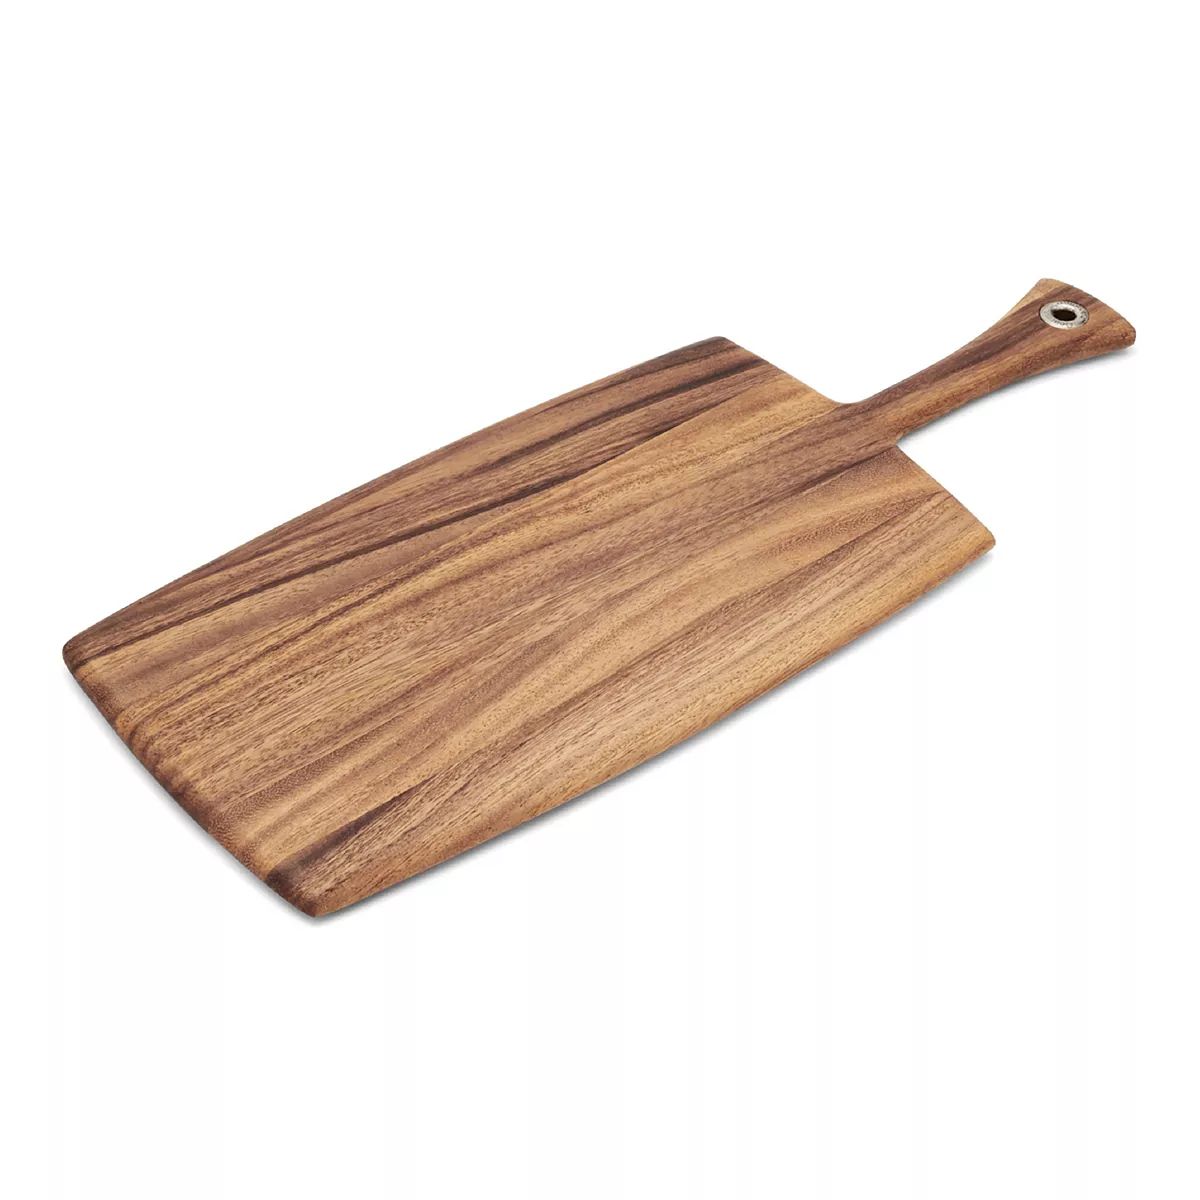 Ironwood Gourmet Large Rectangular Paddle | Kohl's